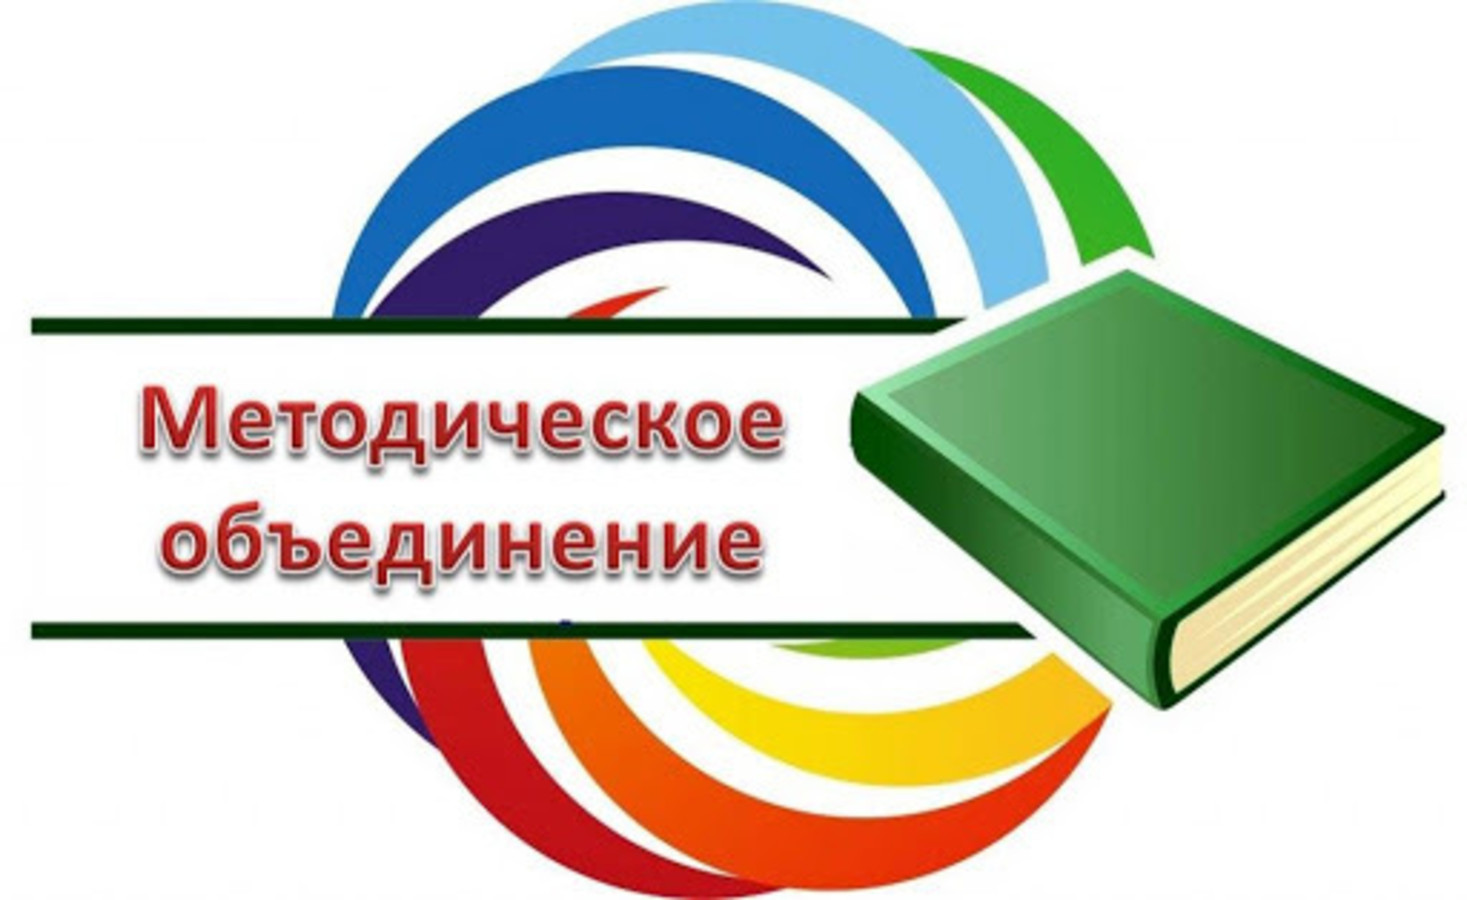 Районное методическое объединение для учителей-дефектологов пунктов коррекционно-педагогической помощи Солигорского района